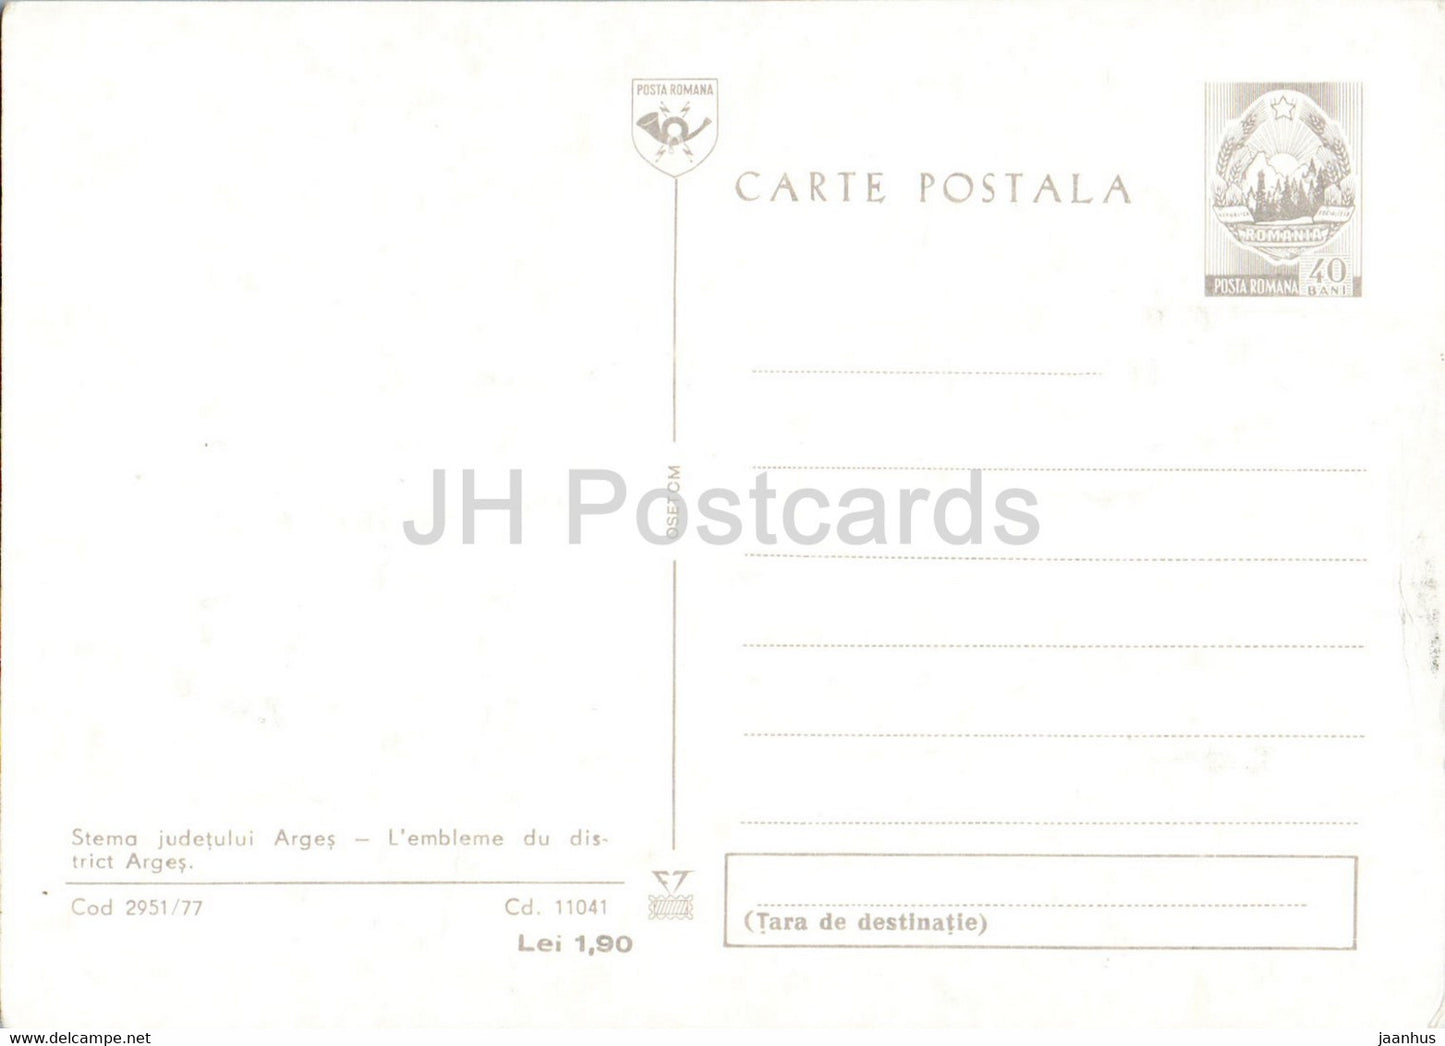 Armoiries d'Arges - entier postal - Roumanie - inutilisé